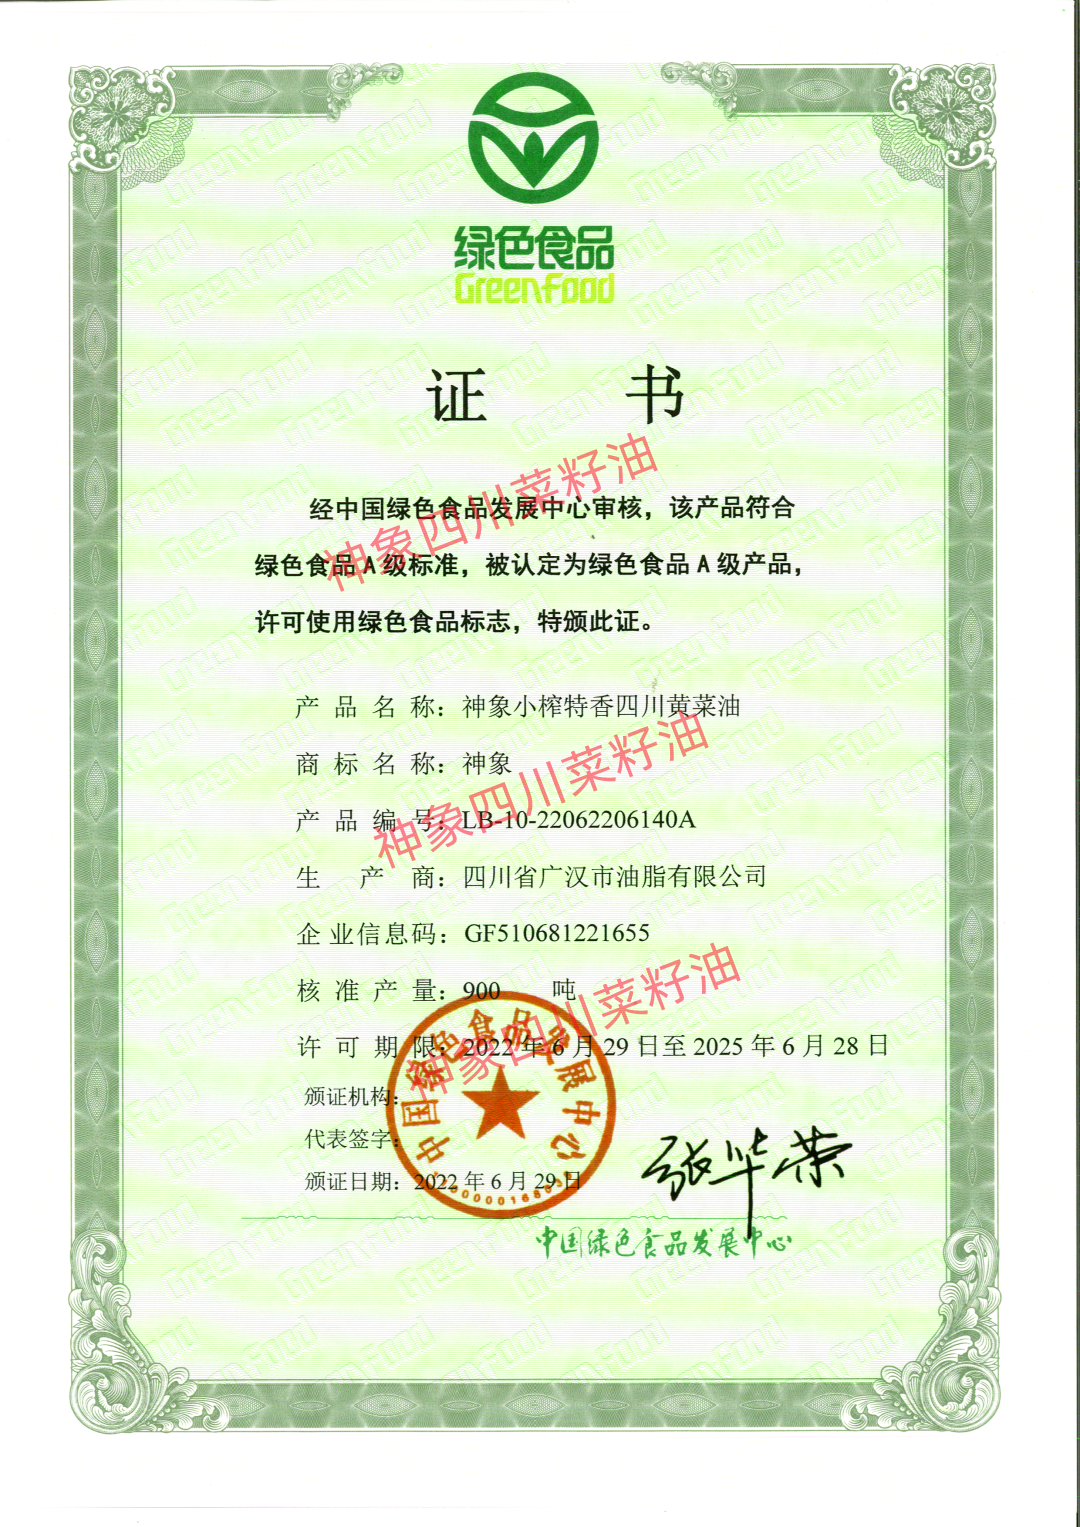 恭賀四川省廣漢市油脂有限公司榮獲“綠色食品證書”